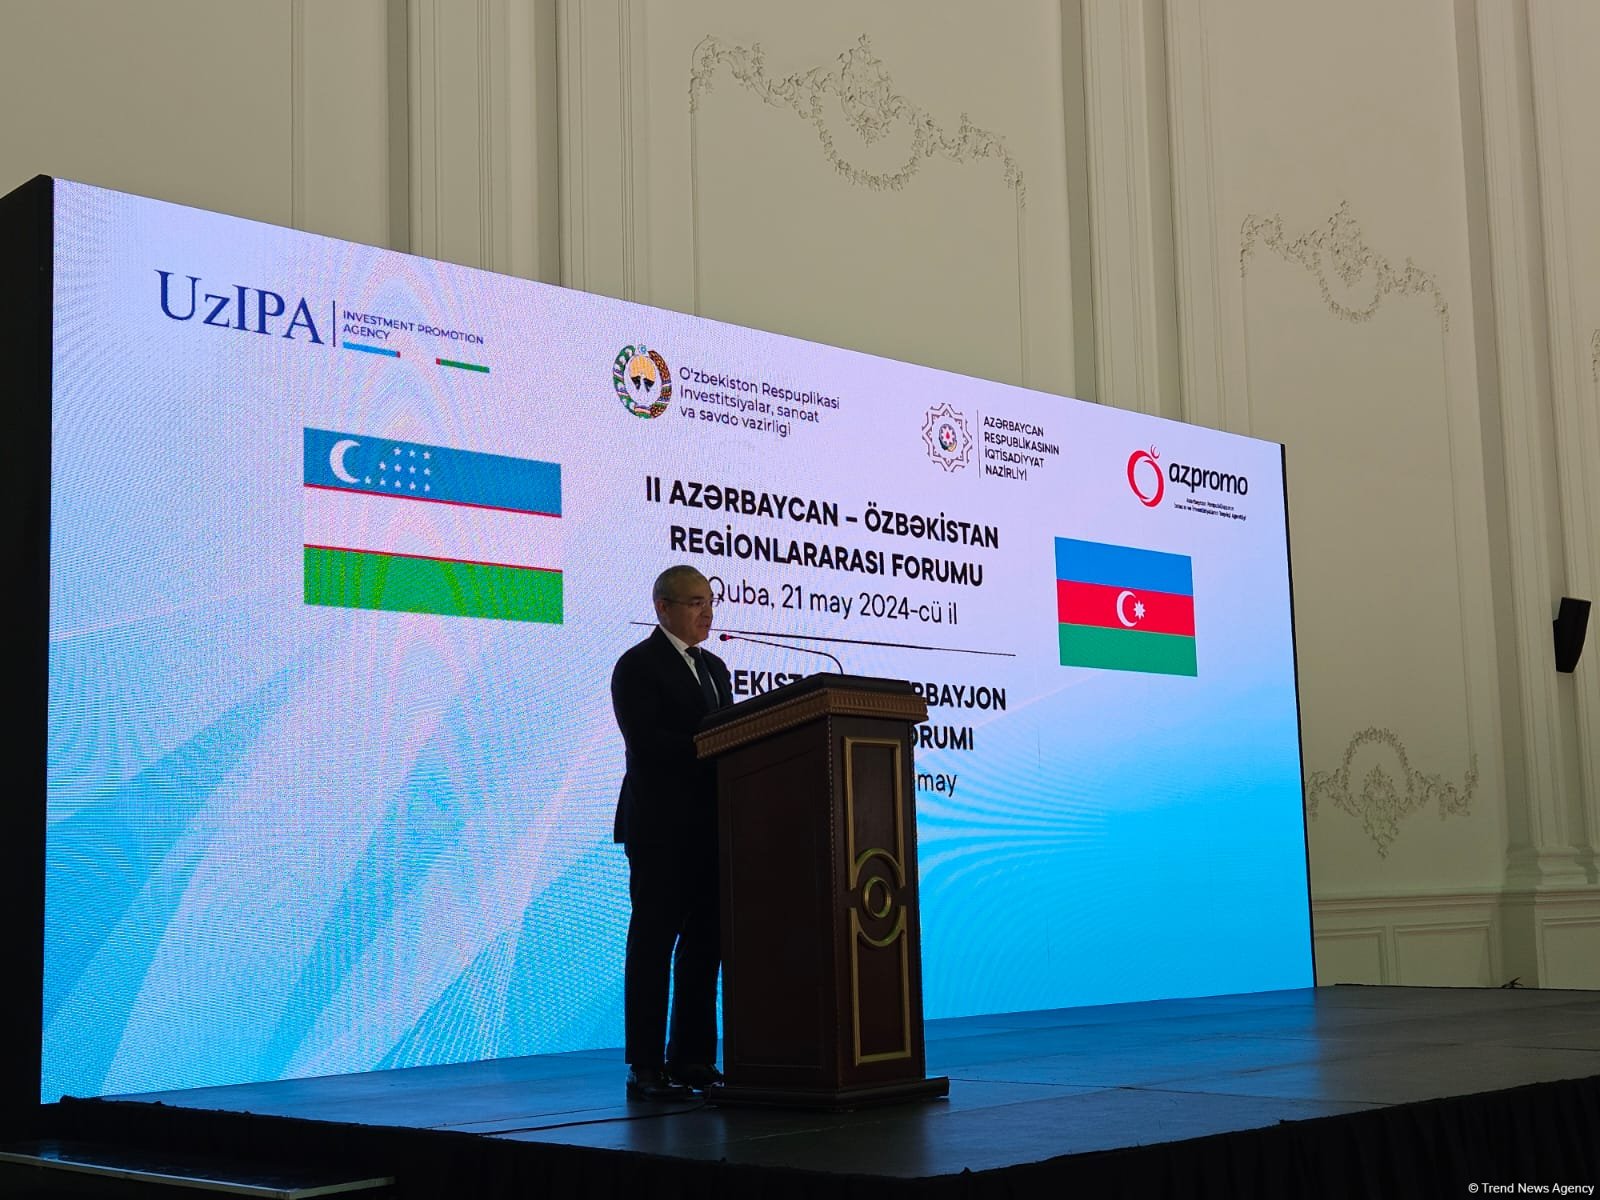 Азербайджан планирует сотрудничать с Узбекистаном в сфере текстиля на освобожденных территориях - Микаил Джаббаров